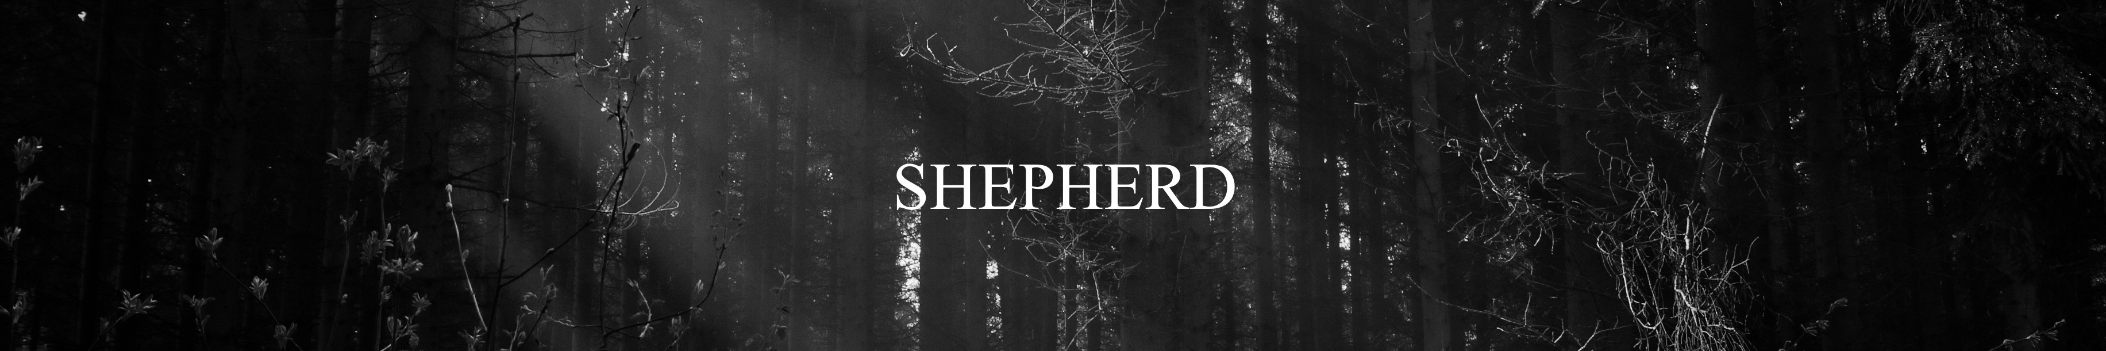 SHEPHERD music